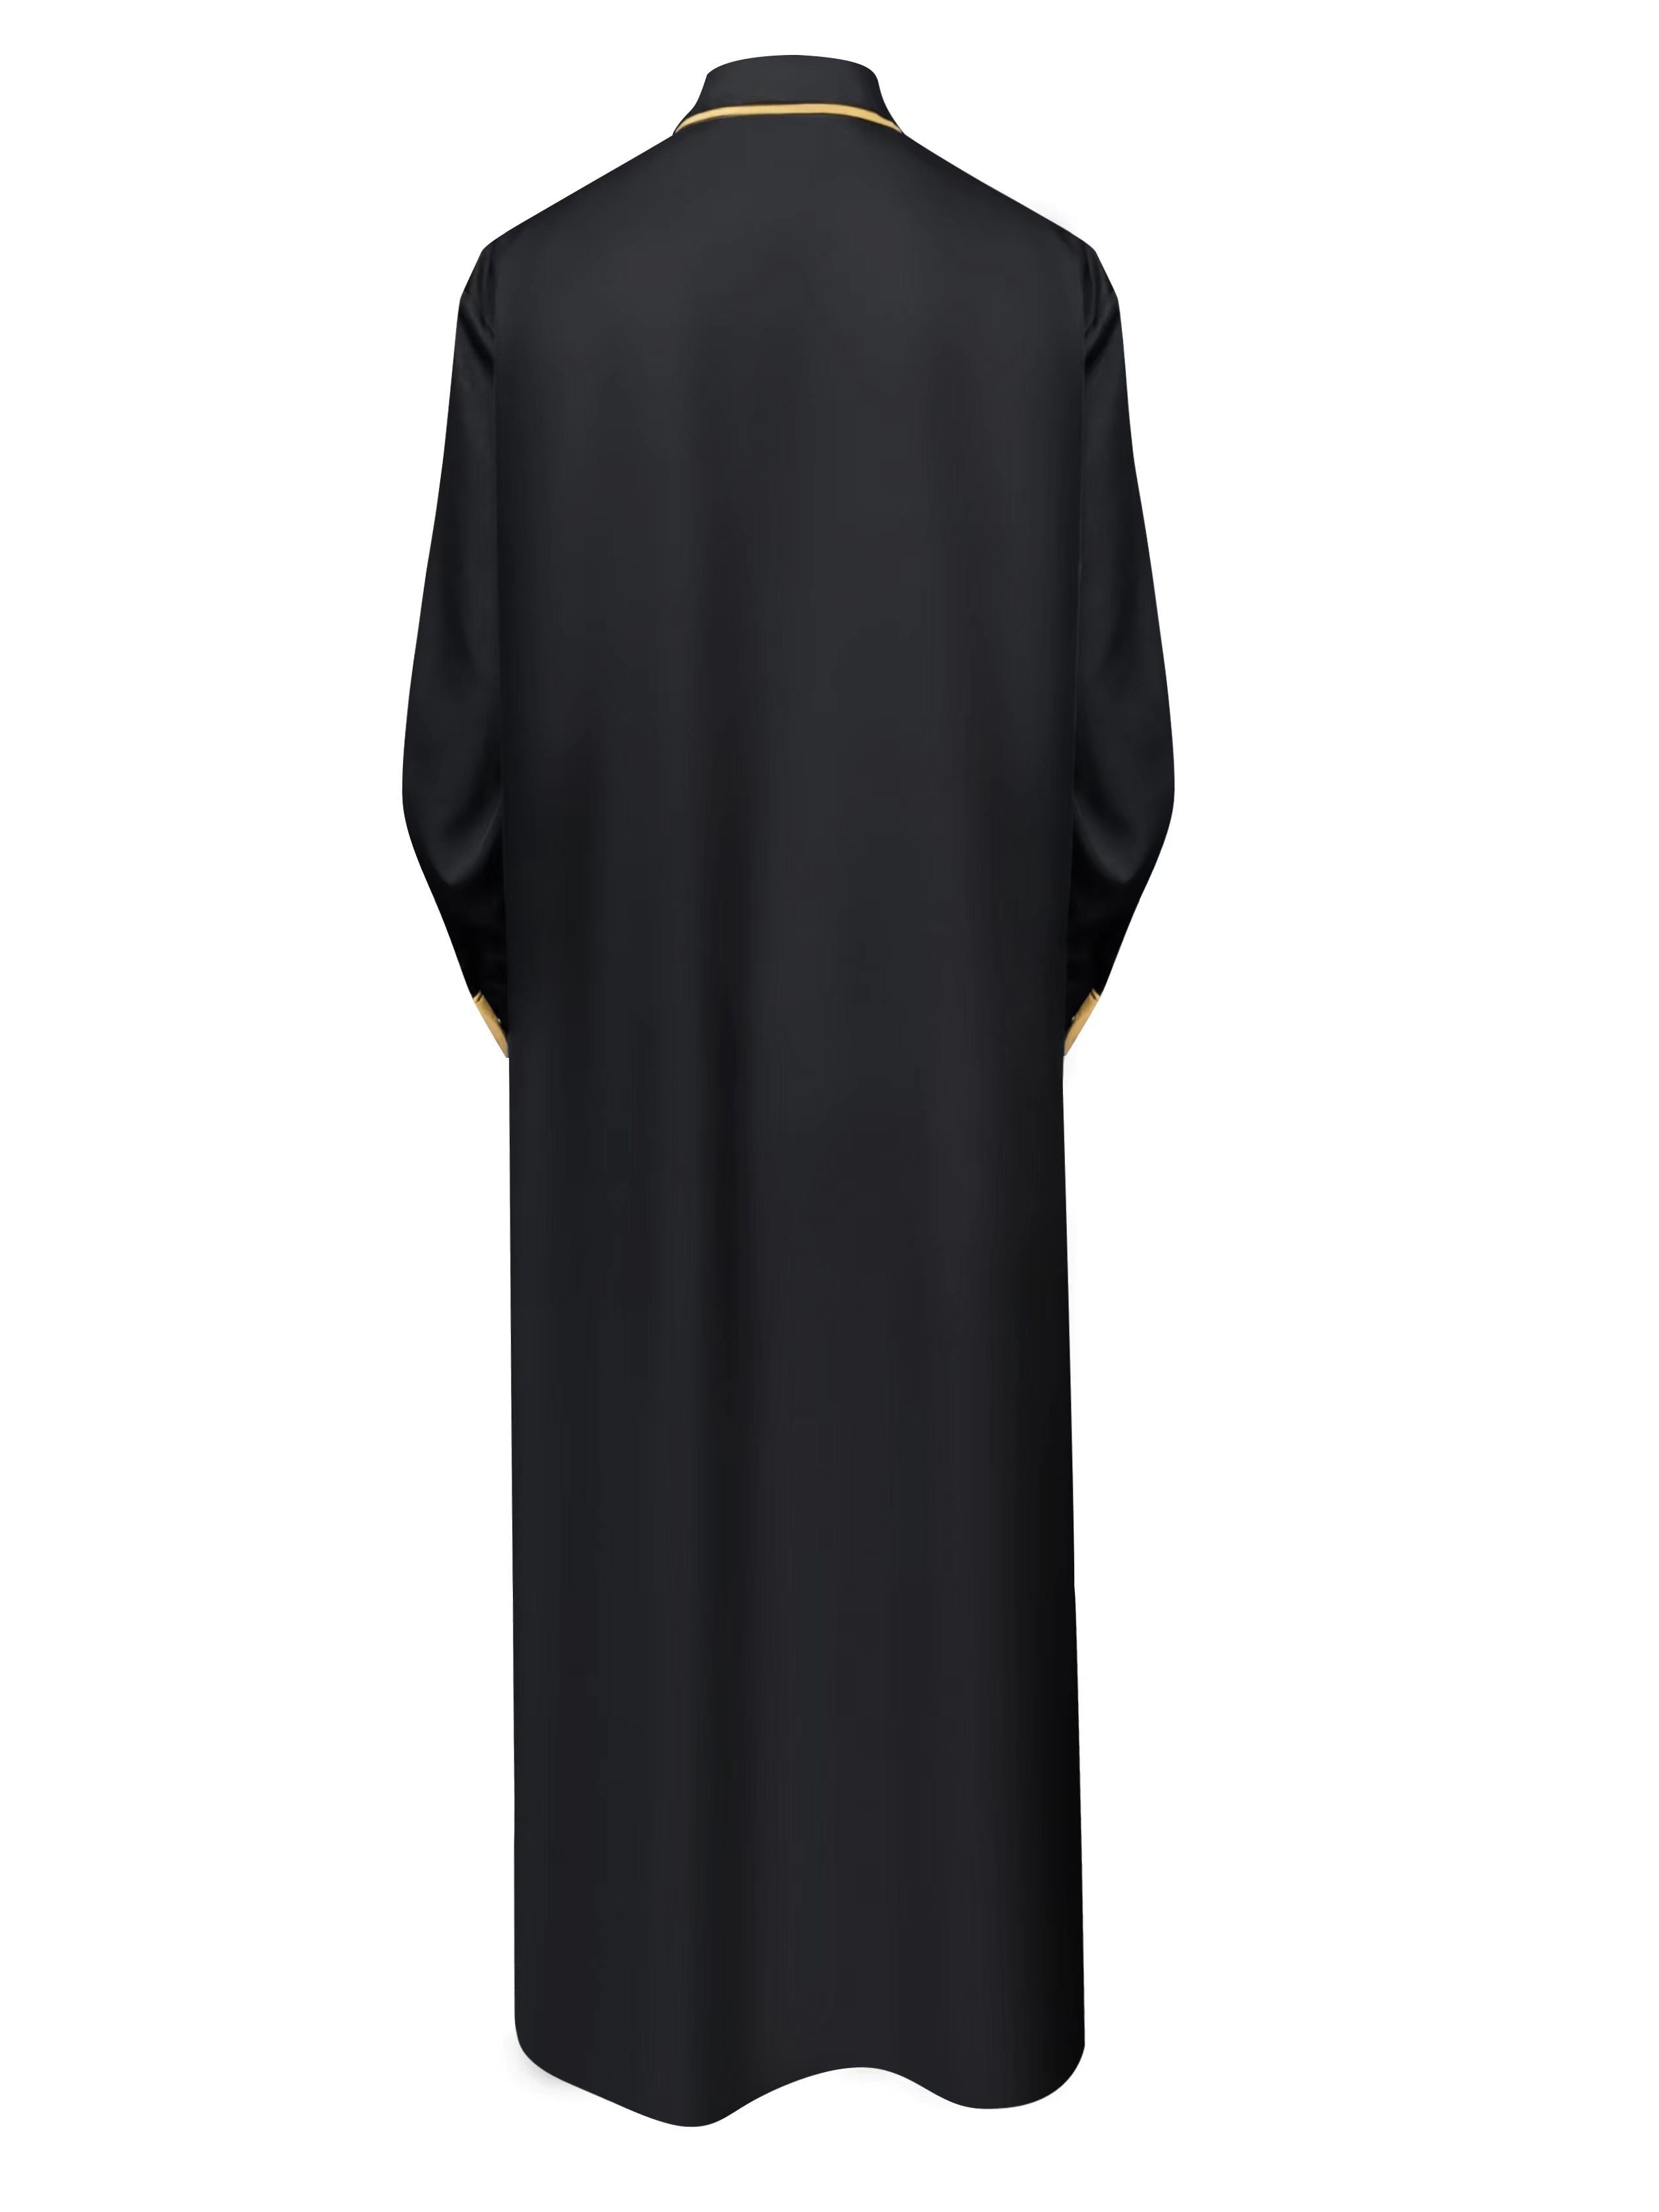 Арабский мужской черный халат больших размеров, мусульманский повседневный халат Джубба с вышивкой, всесезонный универсальный халат Джубба Тауб для мужчин, мужская одежда, большие размеры